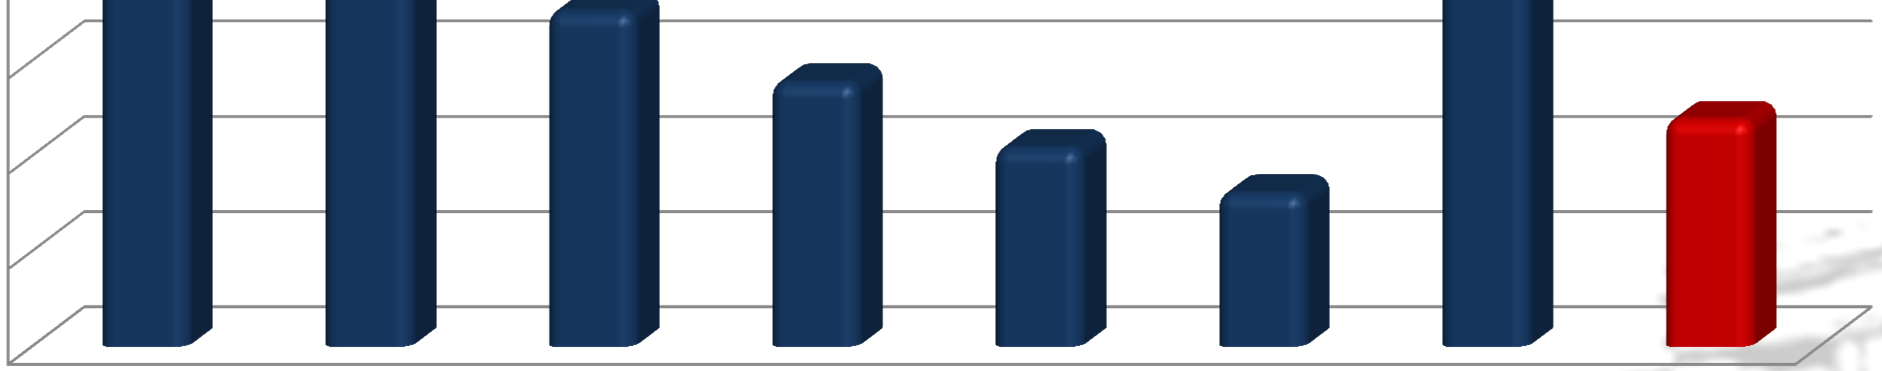 Przeciętne miesięczne wynagrodzenia w KSC wg grup stanowisk (w zł, brutto) Wykres 19. Poziom przeciętnych miesięcznych wynagrodzeń w KSC wg grup stanowisk w 2013 r.